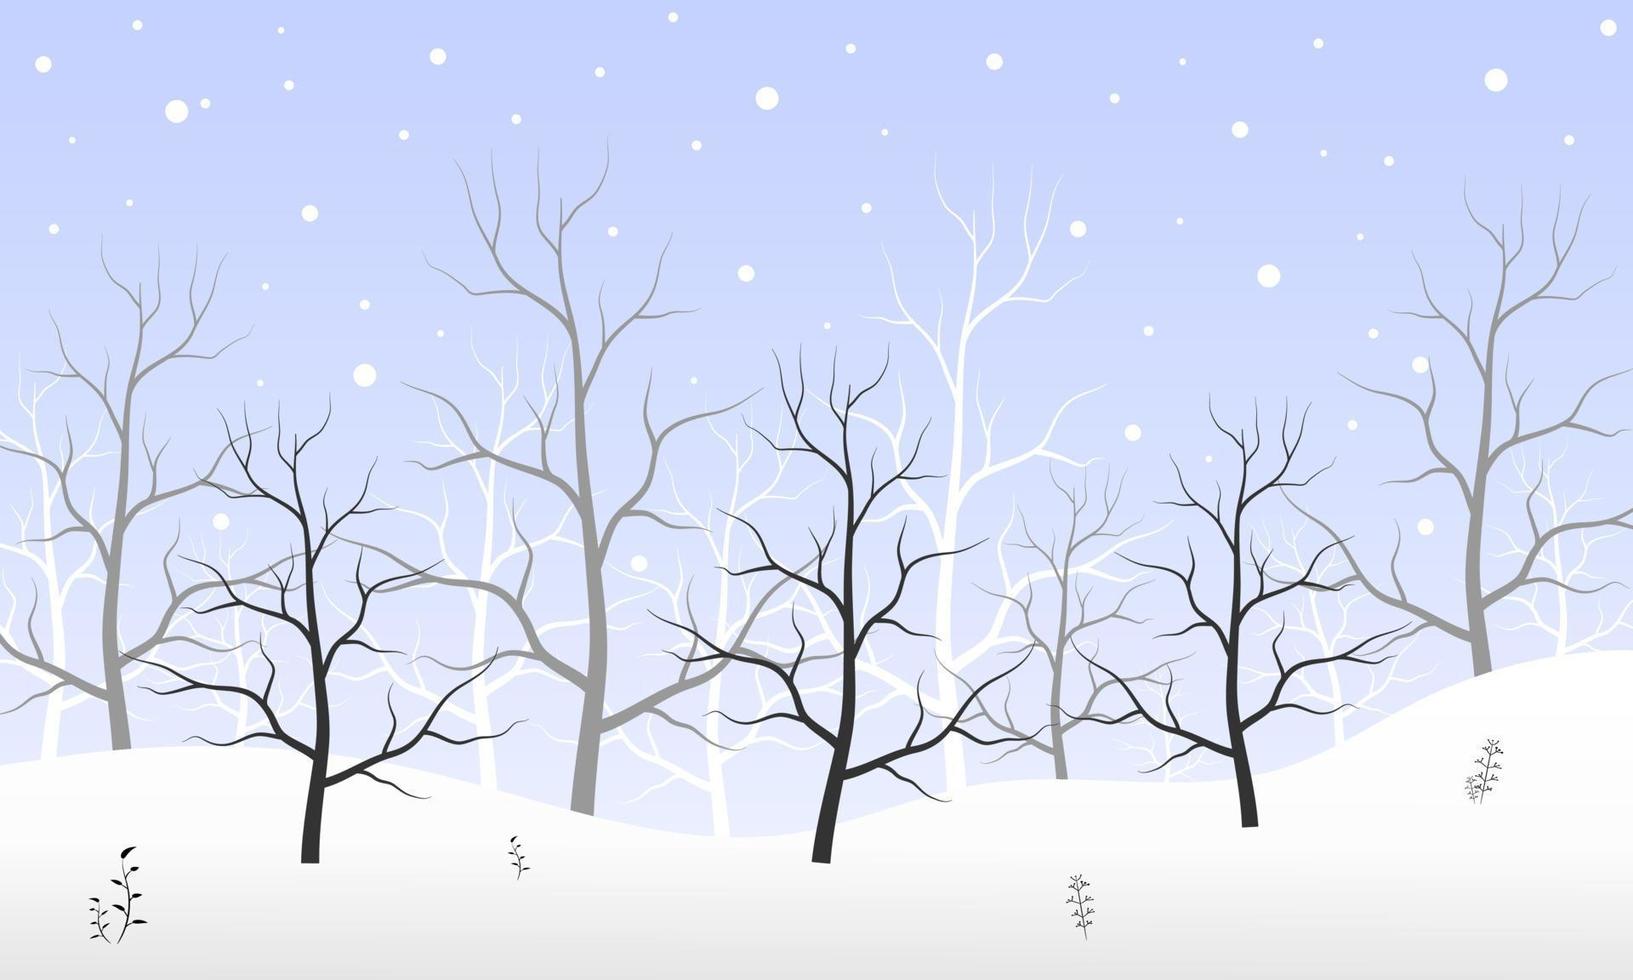 schwarzer und verzweigter Baumwaldhintergrund und Schneien für Wintersaisonkonzept. handgezeichnete isolierte illustrationen. vektor